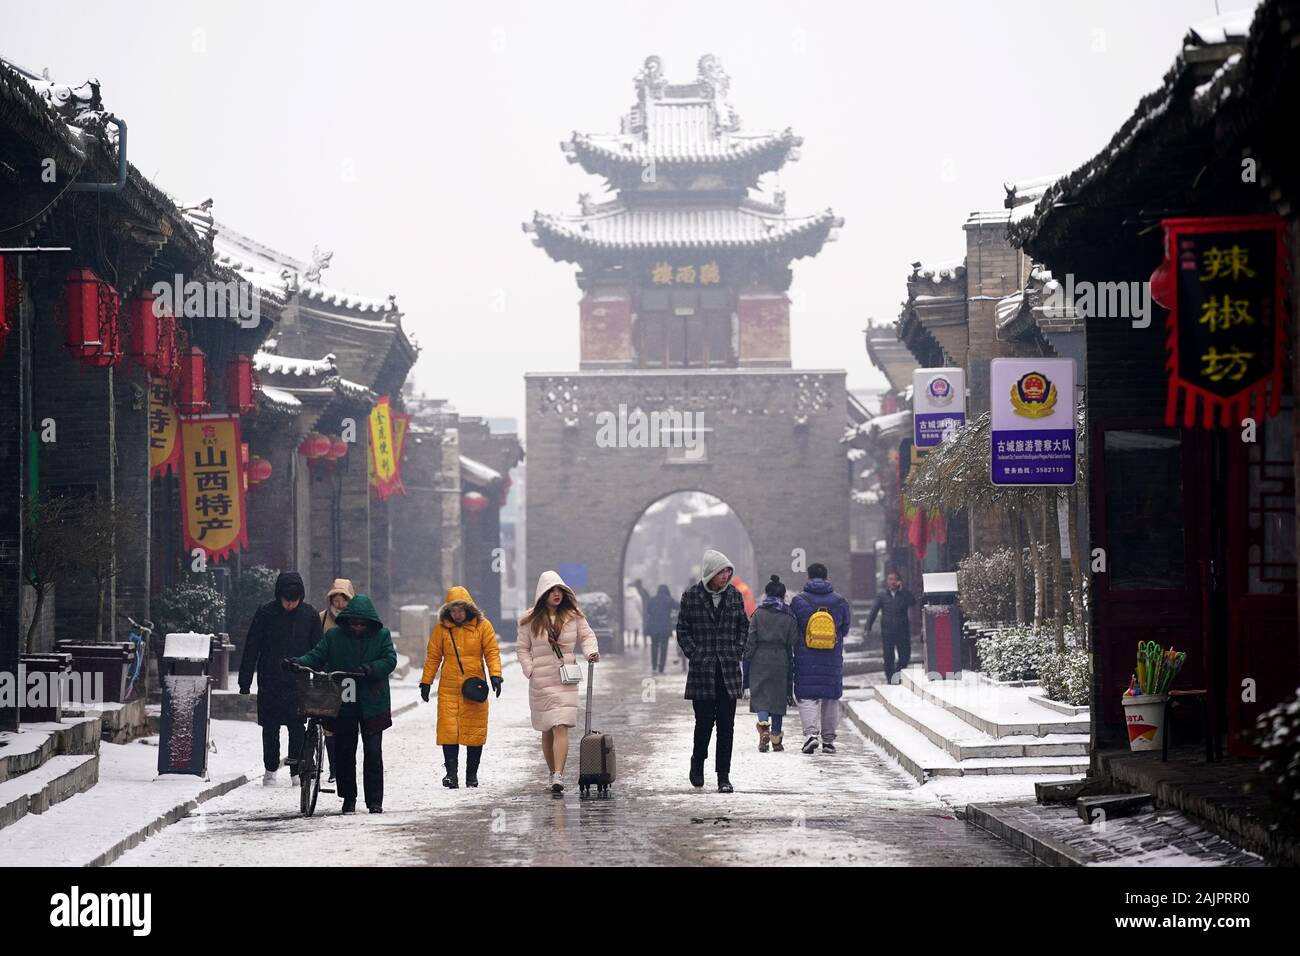 Pingyao, China. 5 de enero, 2020. Los turistas visitan el nevado Pingyao Antigua ciudad en el norte de la Provincia china de Shanxi, 5 de enero de 2020. Fundada en el siglo 14, la antigua ciudad de Pingyao es un ejemplo excepcionalmente bien conservado de una ciudad chinos tradicionales, que fue nombrada Patrimonio de la Humanidad por la UNESCO en 1997. Crédito: Zhan Yan/Xinhua/Alamy Live News Foto de stock